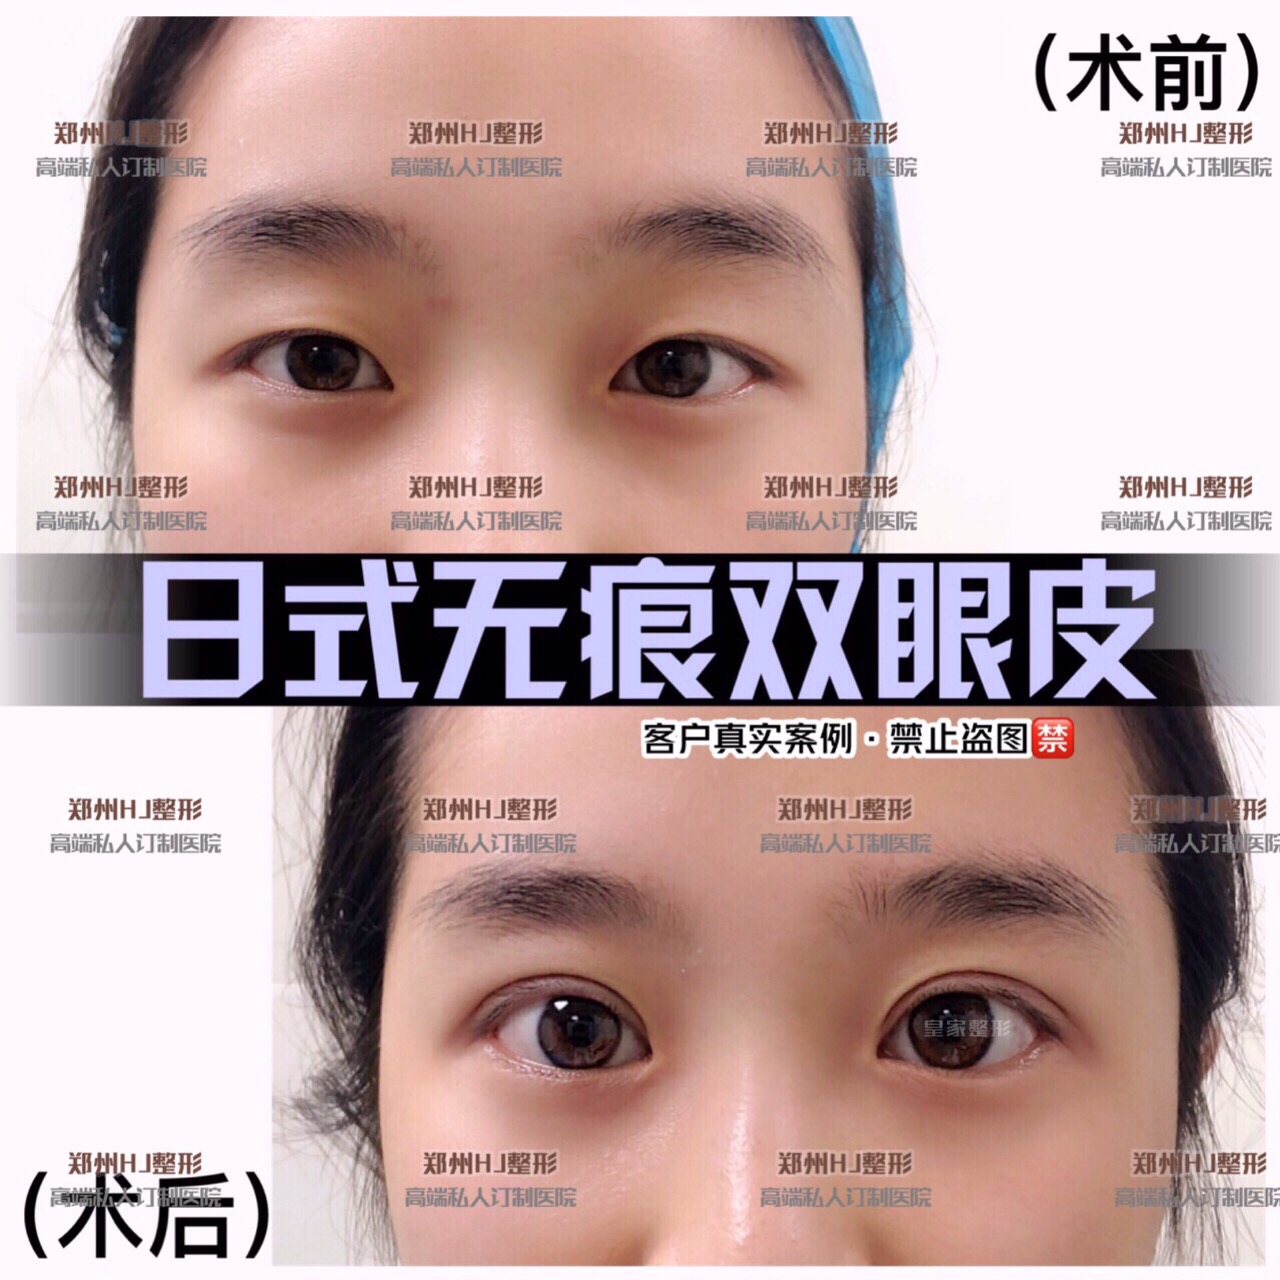 郑州双眼皮手术哪家好 日式无痕双眼皮的原理是什么 日式无痕双眼皮永久吗 龙潭资讯网